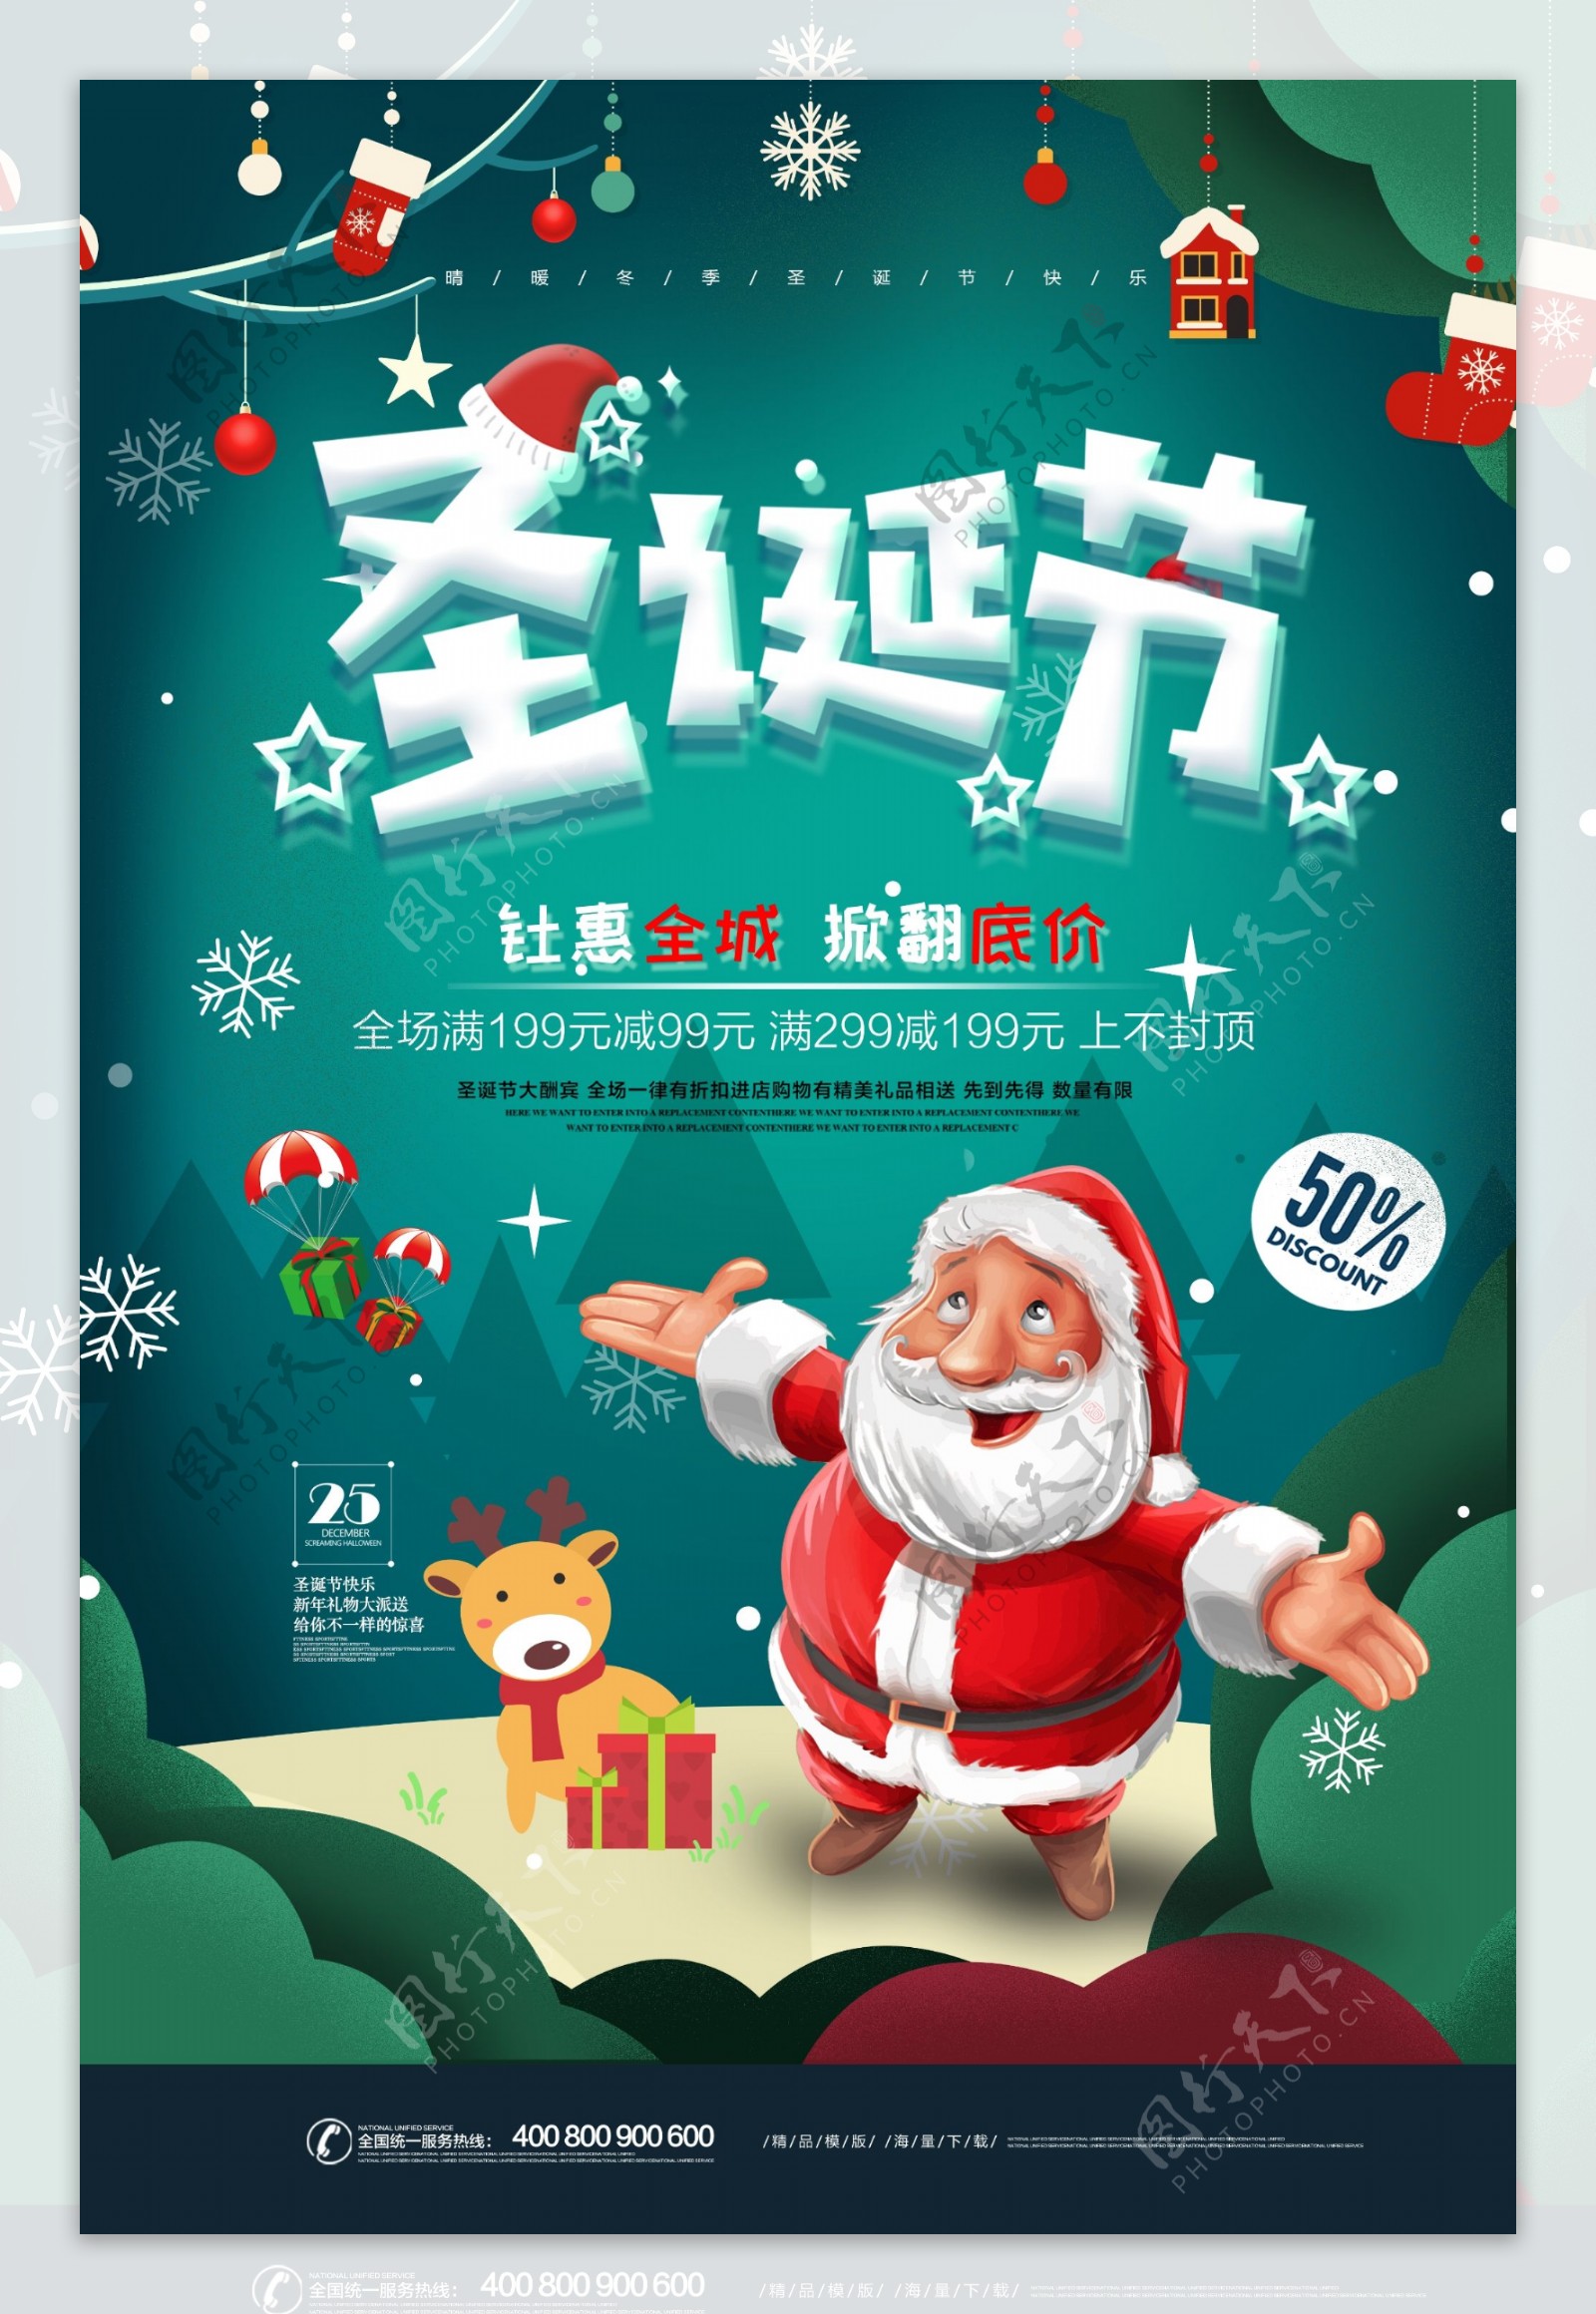 创意手绘圣诞节促销海报.psd